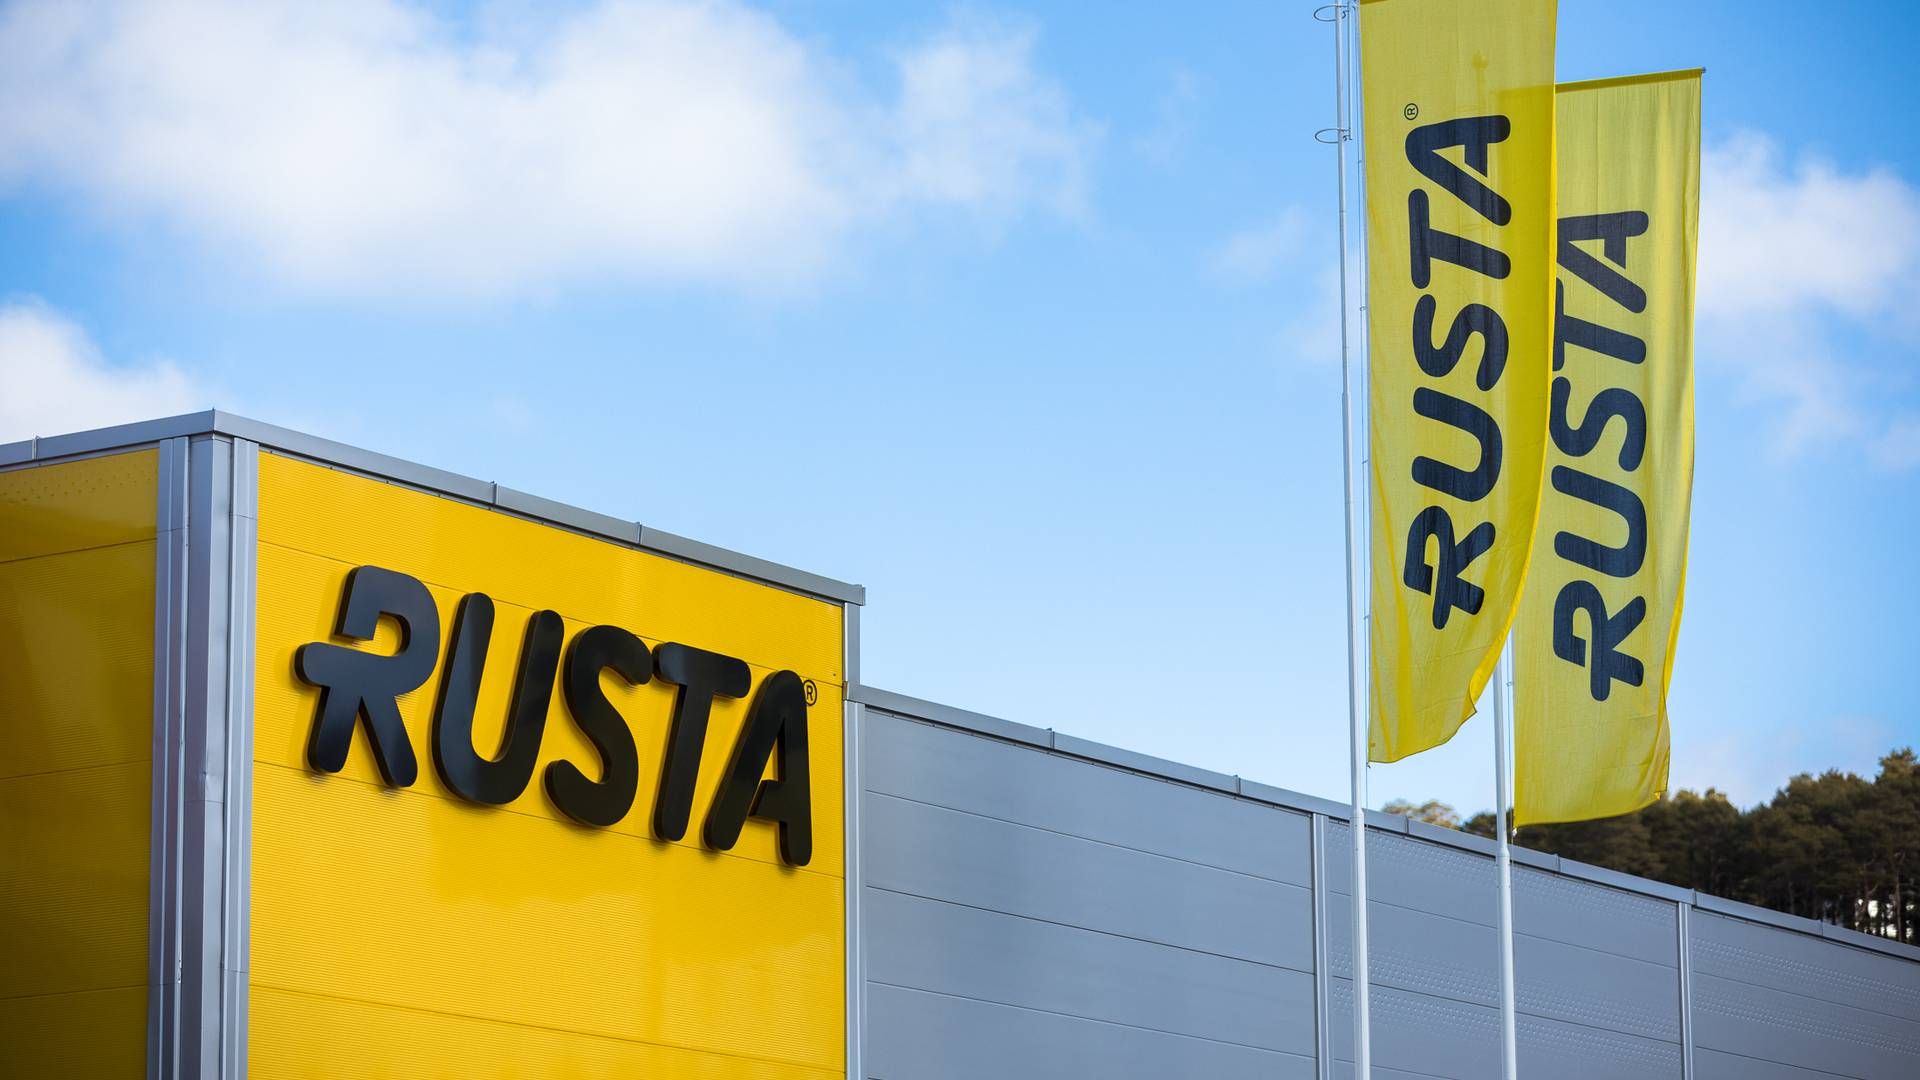 TIL LØRENSKOG: Rusta etablerer seg på Metro senter i Lørenskog. | Foto: Rusta